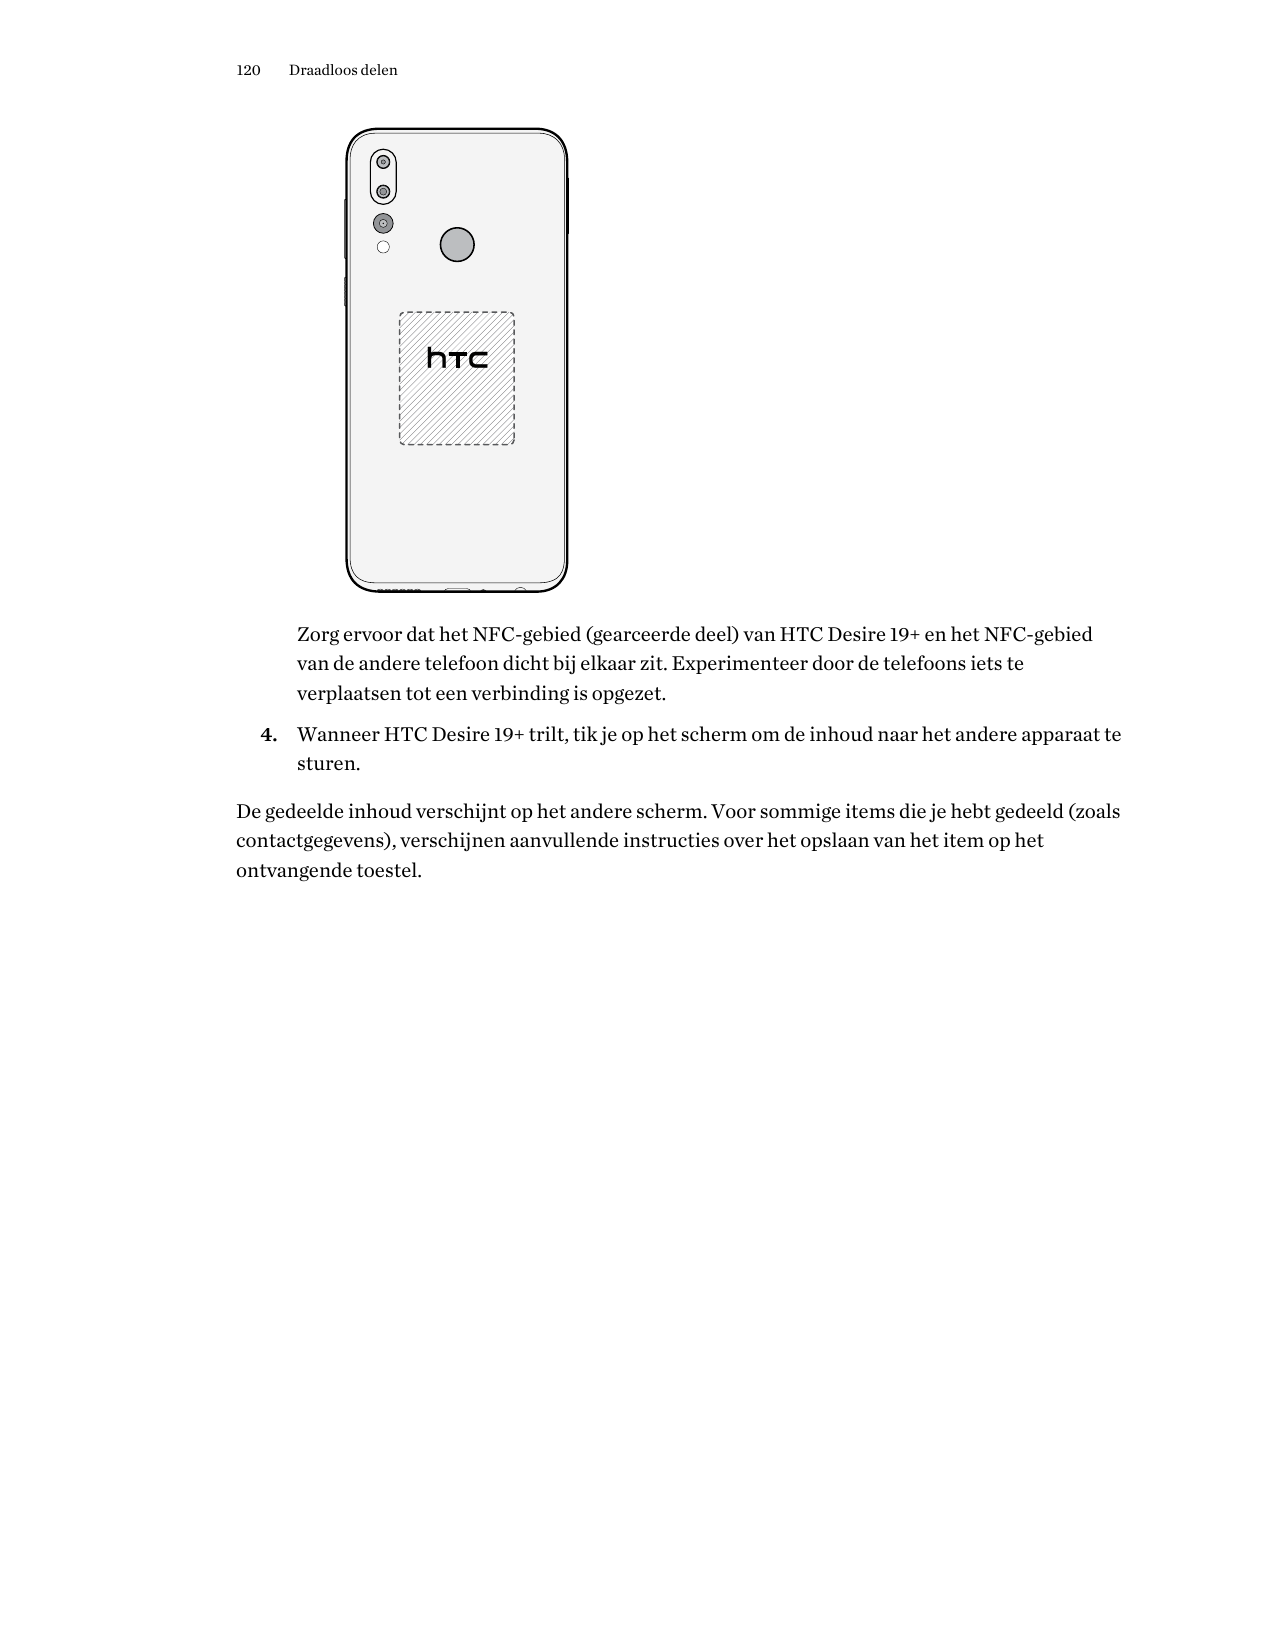 120Draadloos delenZorg ervoor dat het NFC-gebied (gearceerde deel) van HTC Desire 19+ en het NFC-gebiedvan de andere telefoon di